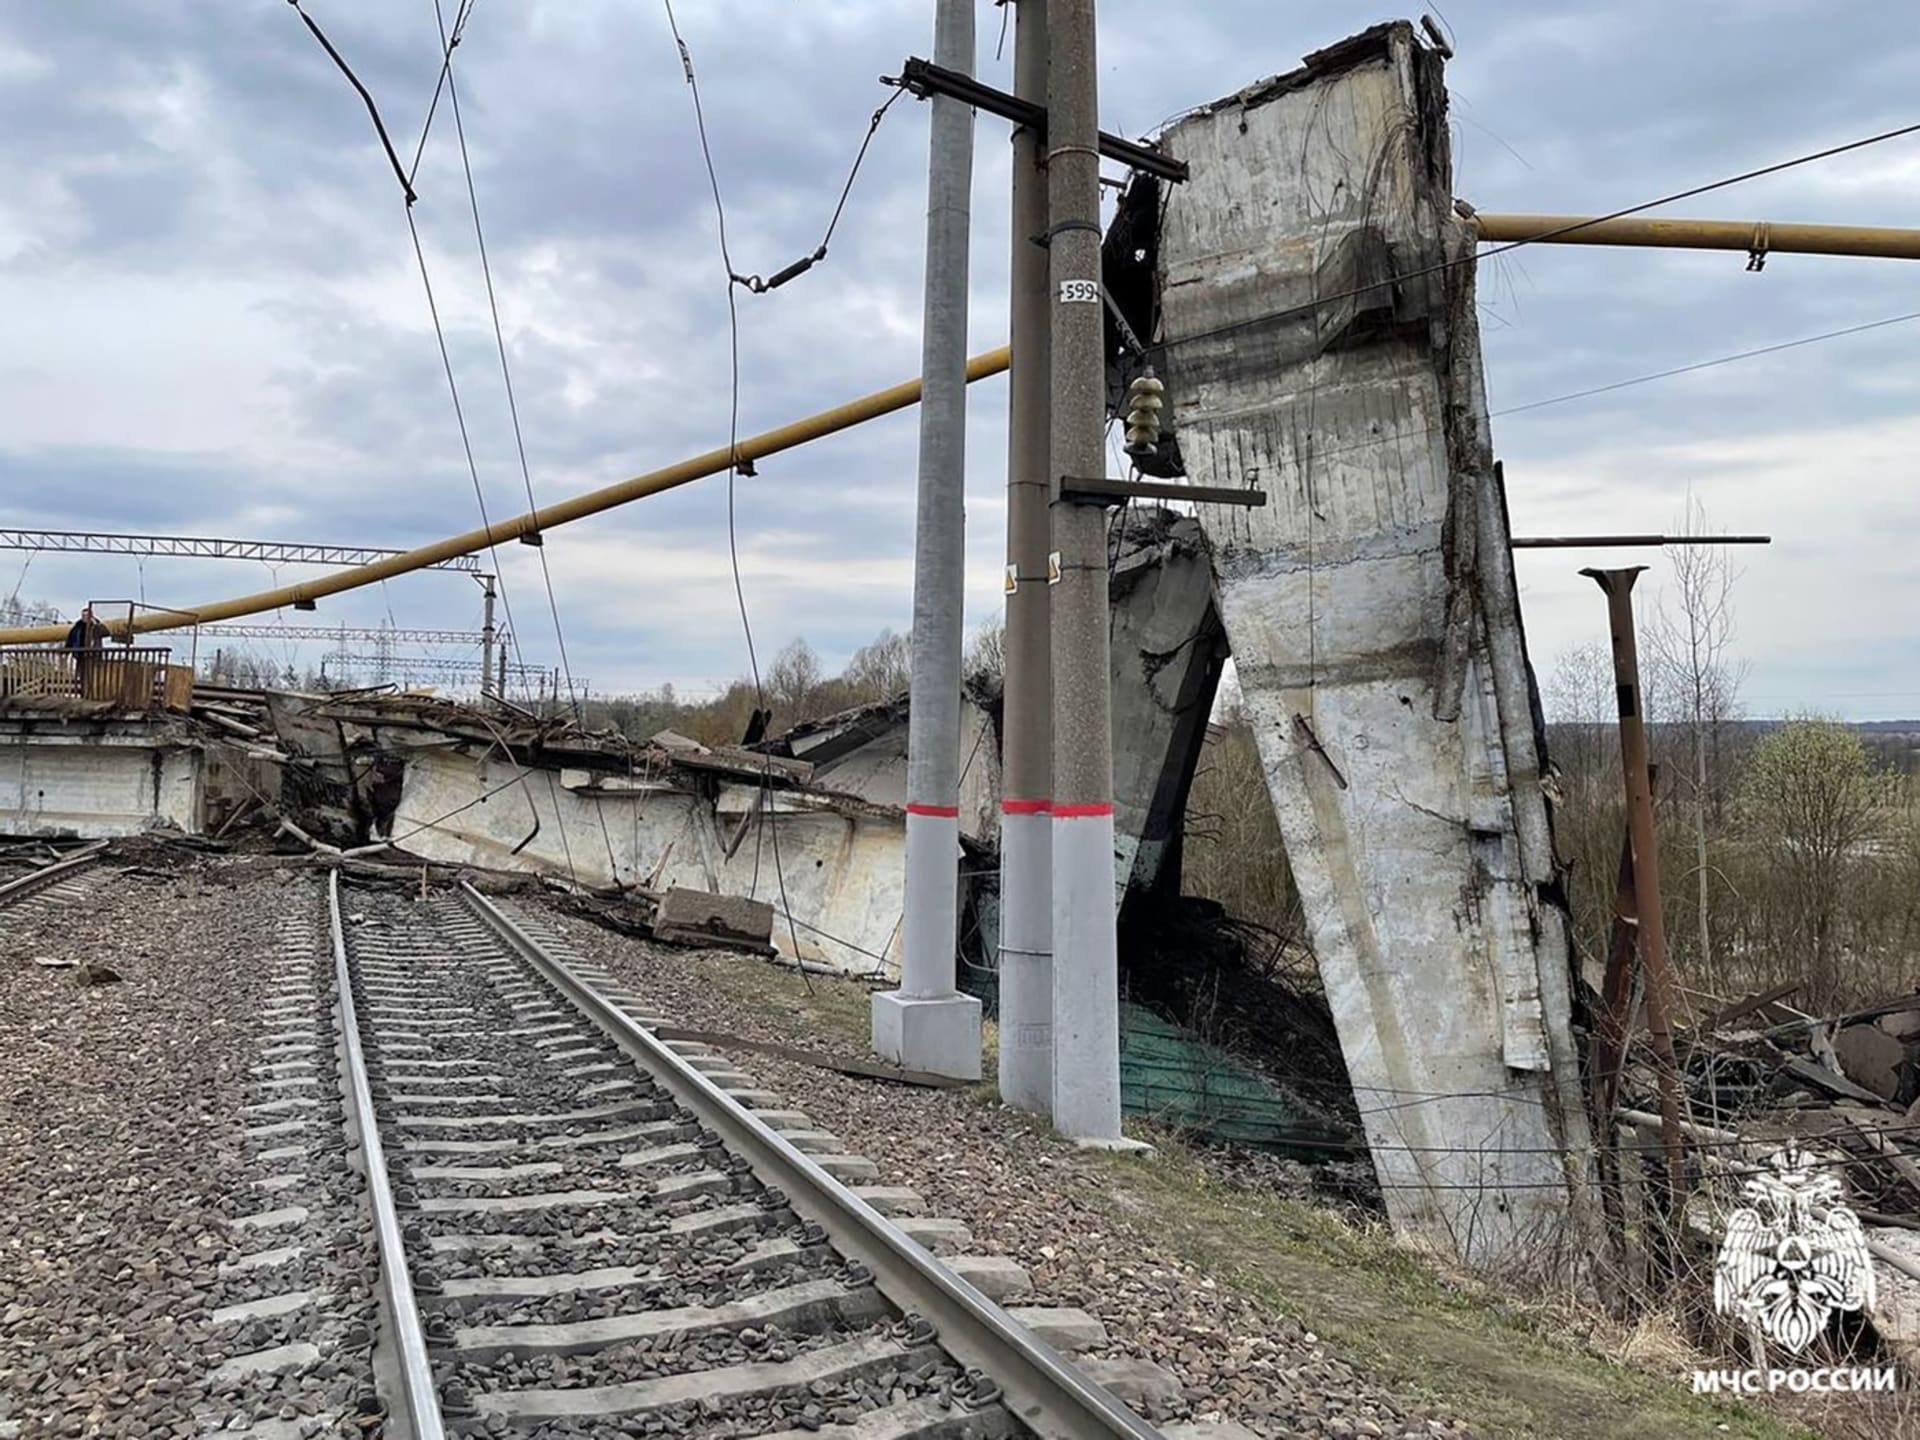 Ve městě Vjazma ve Smolenské oblasti v Rusku se část mostu zřítila právě ve chvíli, kdy po něm přejíždělo osobní auto a kamion. 